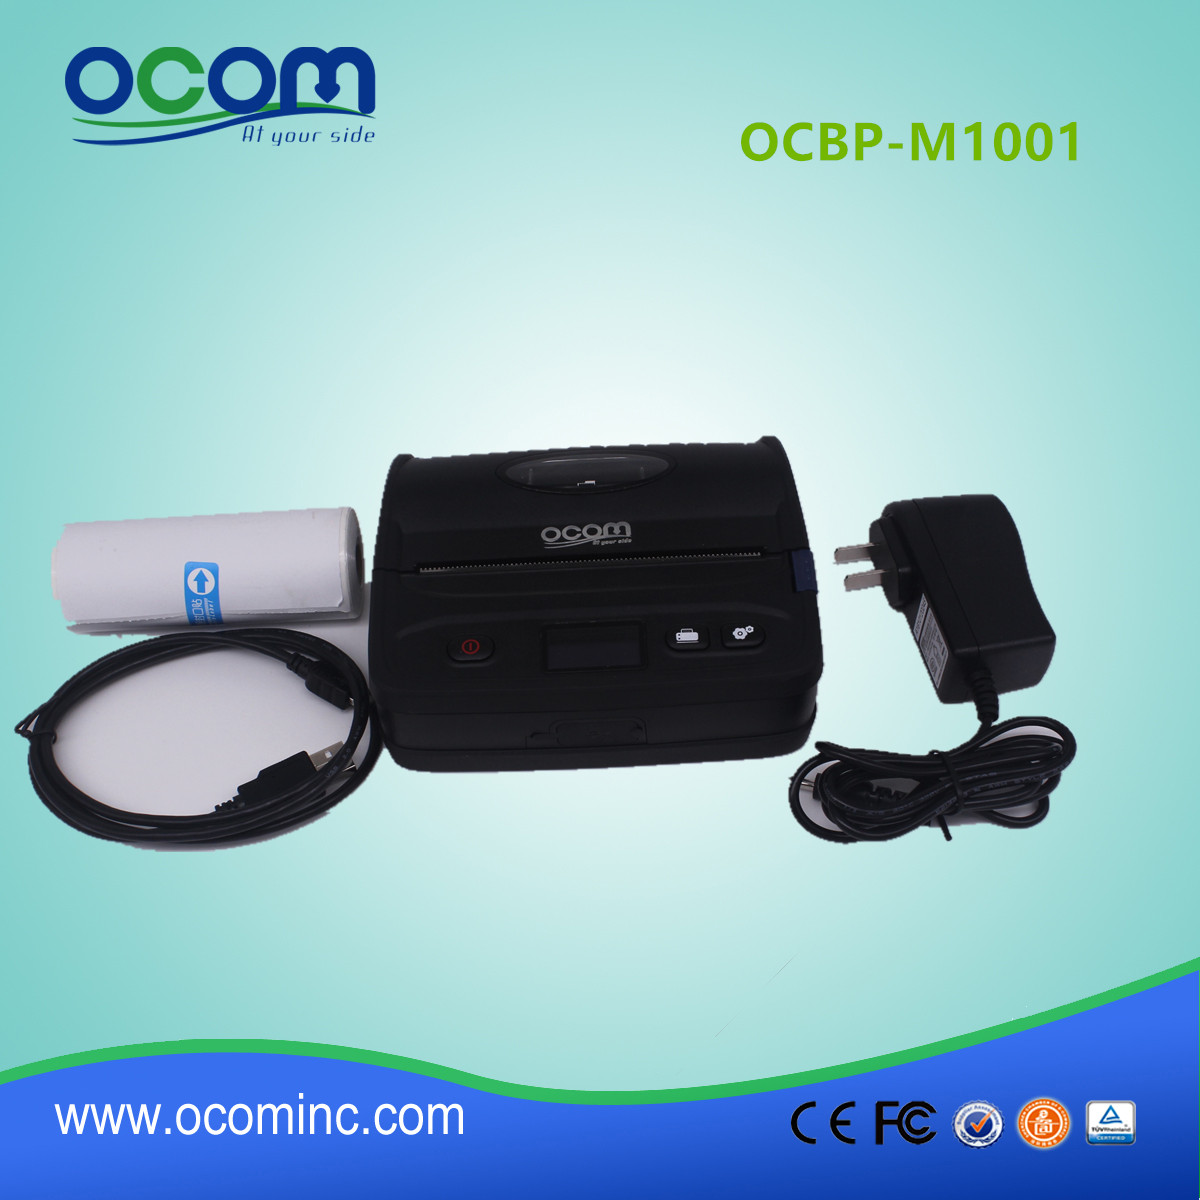 108mm Portbale impresora de etiquetas de código de barras con Bluetooth (OCBP-M1001)